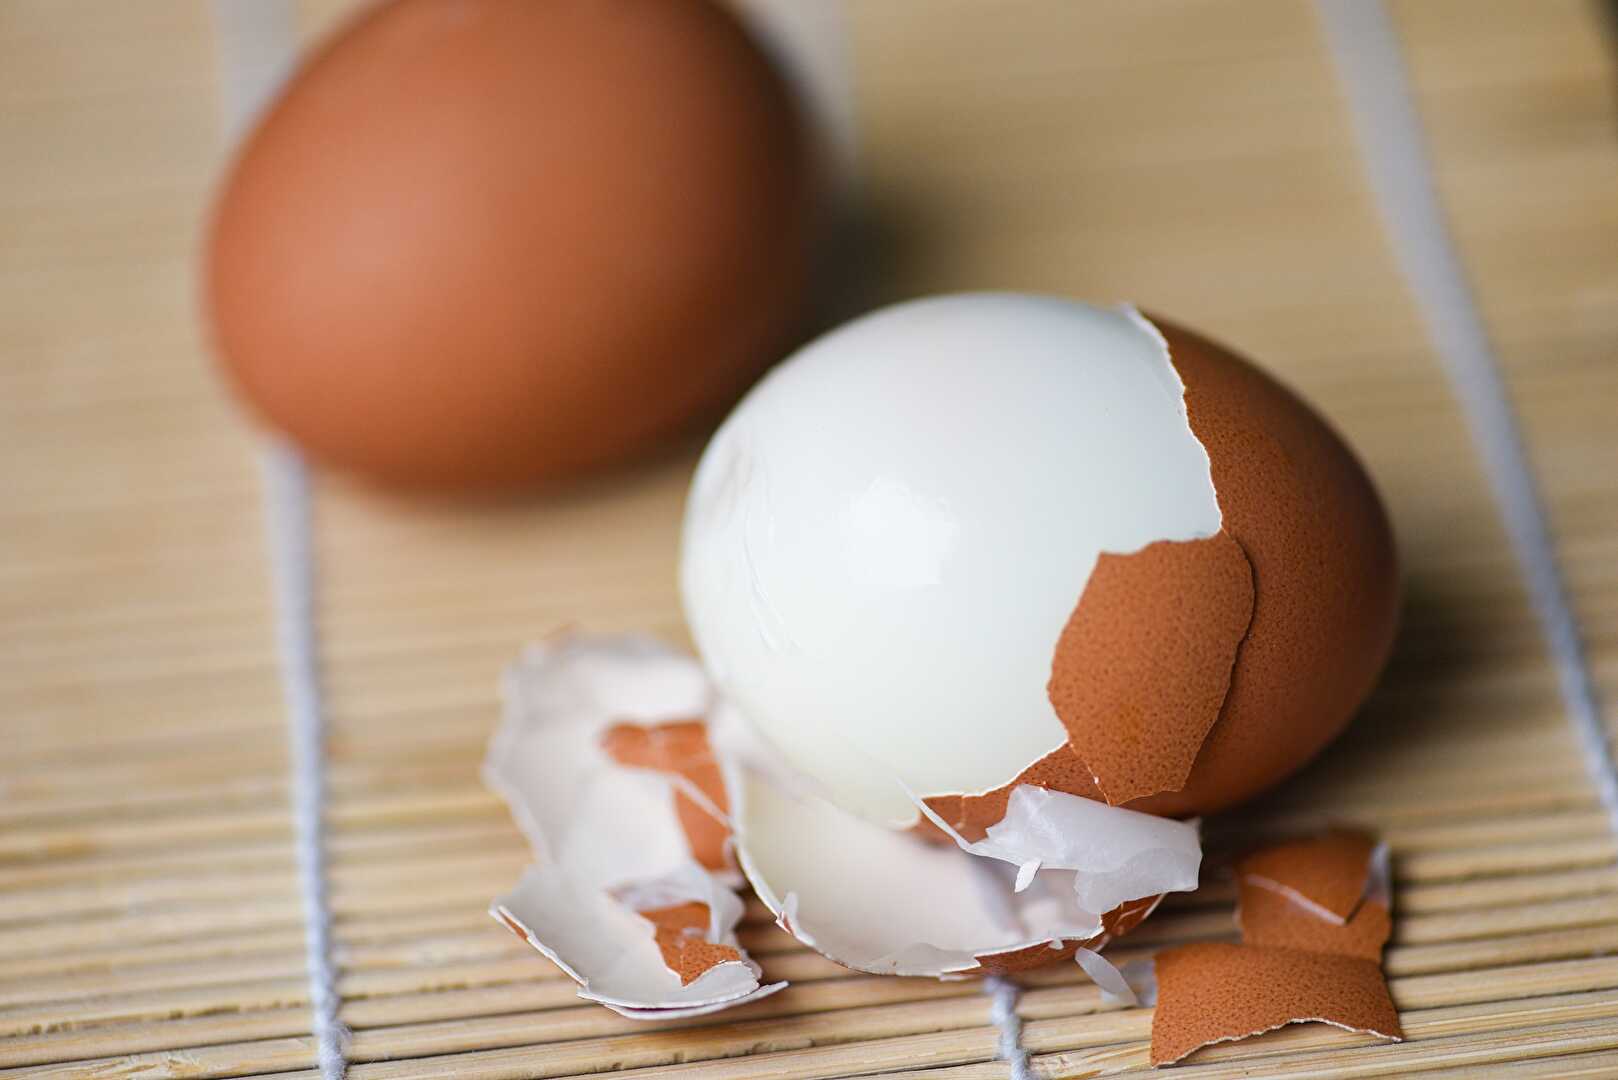 Les 4 techniques pour écaler un œuf dur de manière facile et efficace -  RecettesMania